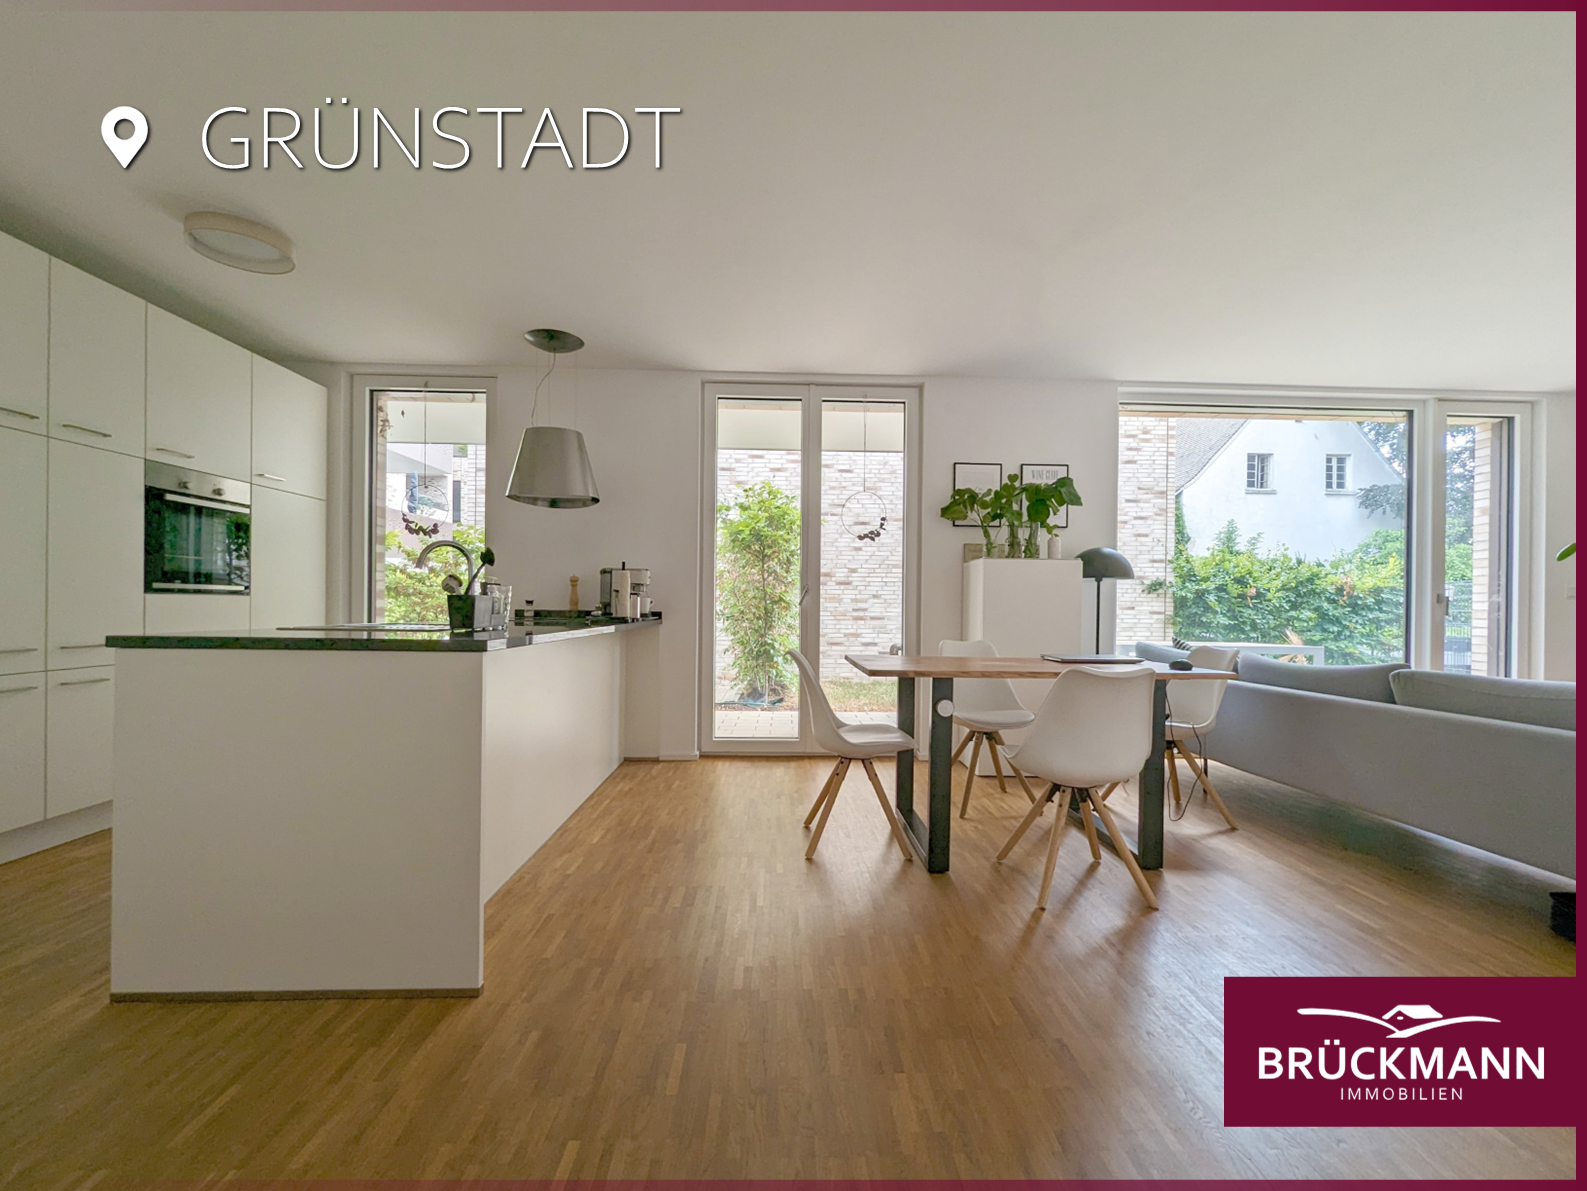 Exklusiv wohnen in moderner & barrierefreier 3-ZKB EG-Wohnung mit Garten!, 67269 Grünstadt, Erdgeschosswohnung